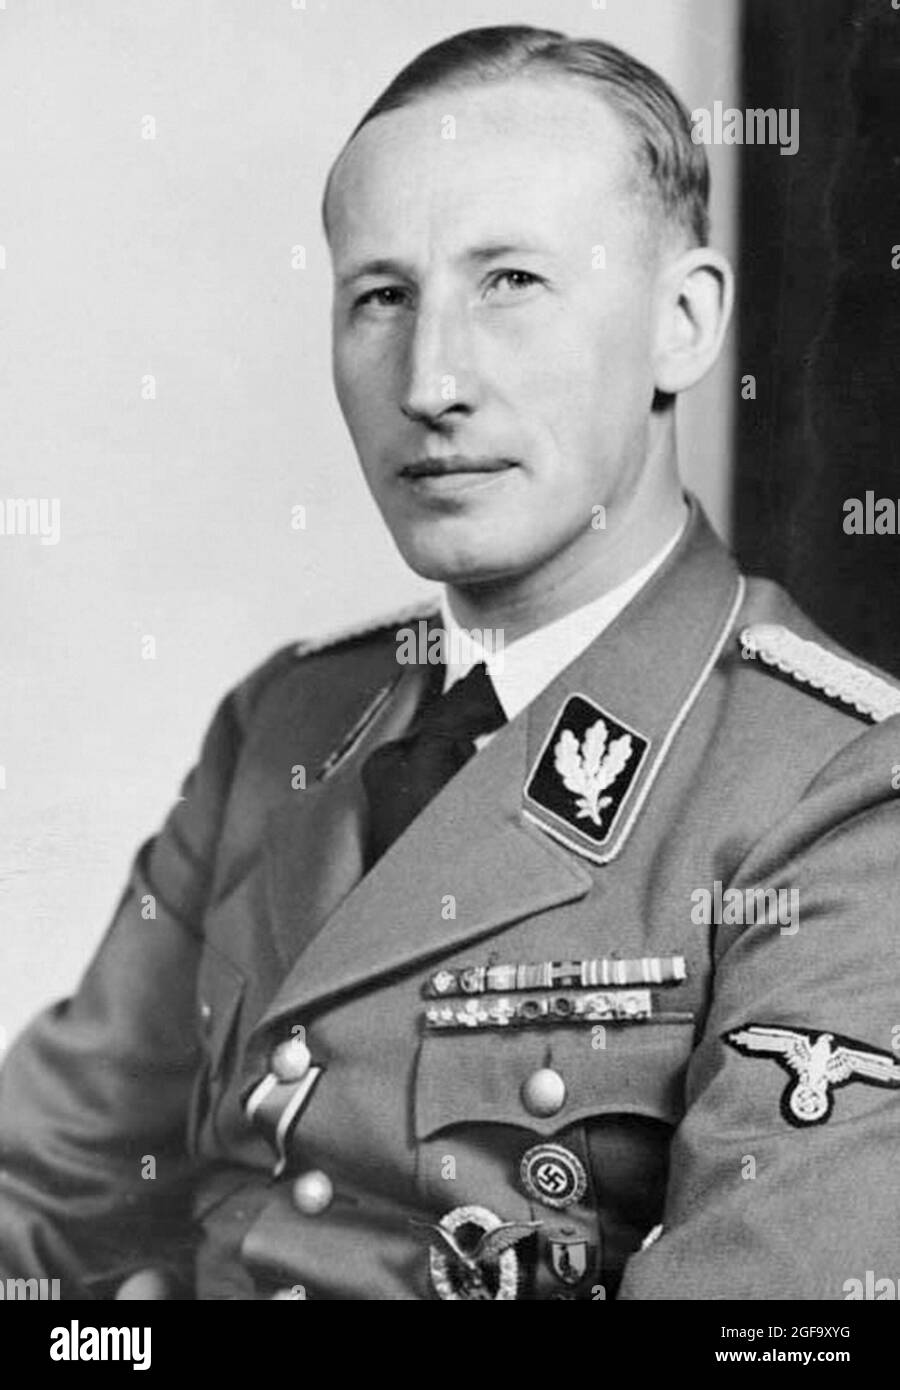 Un portrait du dirigeant nazi et SS Reinhard Heydrich. Il était chef de la Gestapo, Sicherheitsdienst (SD) et du bureau principal de la sécurité de Reich (Reichsicherheitshauptamt ou RSHA) et est considéré comme un architecte en chef de l'holocauste. Il a été assassiné en 1942. Crédit: Bundesarchiv allemand Banque D'Images